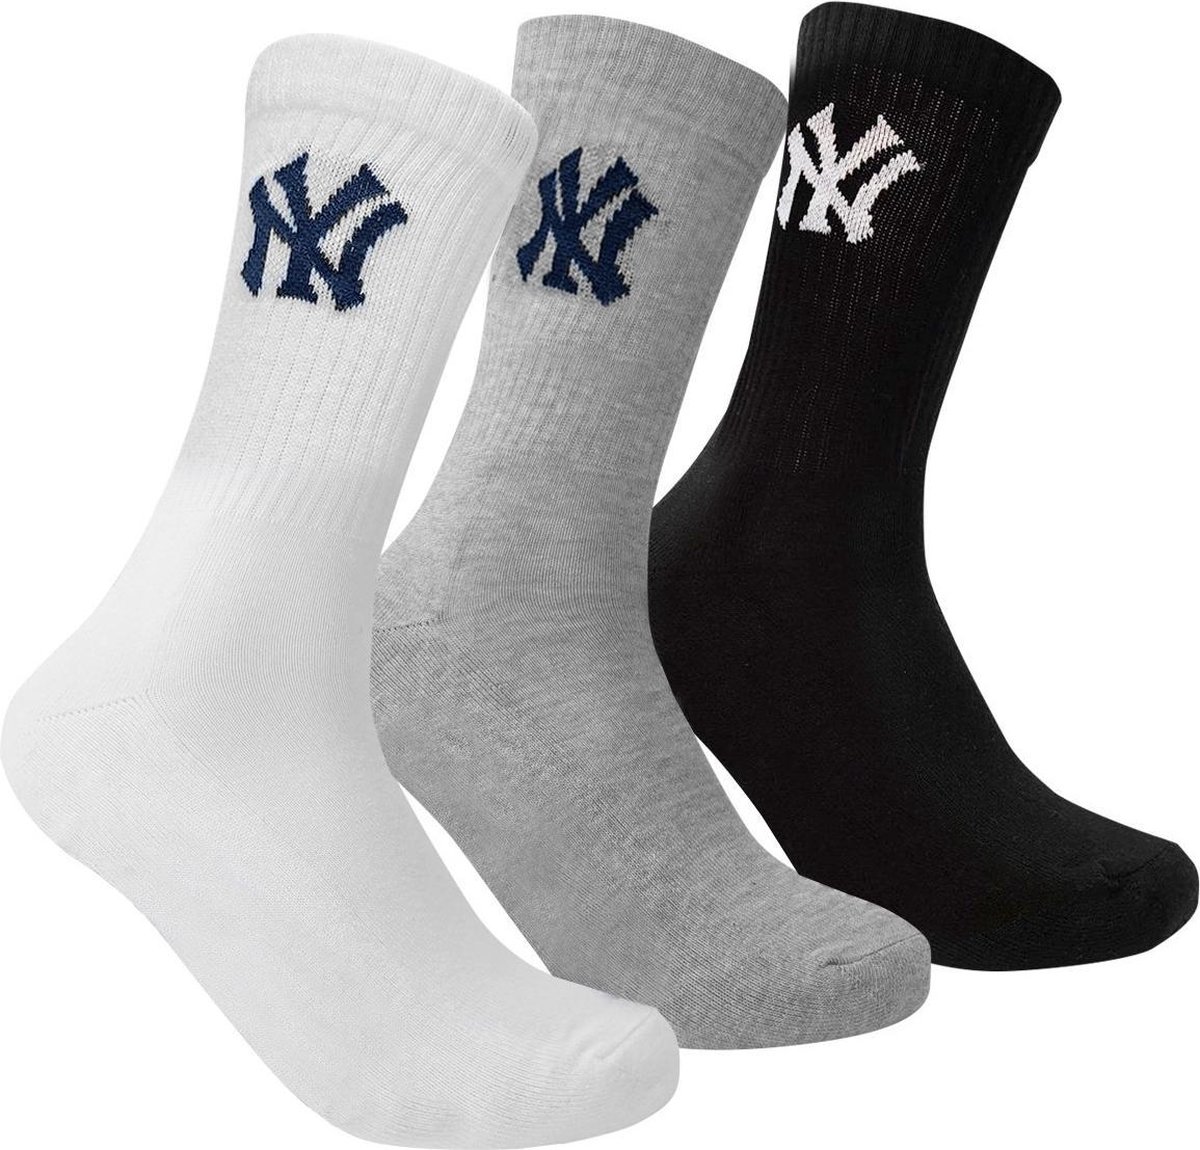 New York Yankees - 3-Pack Crew Socks - Sportsokken - 31 - 34 - Grijs/Wit/Zwart